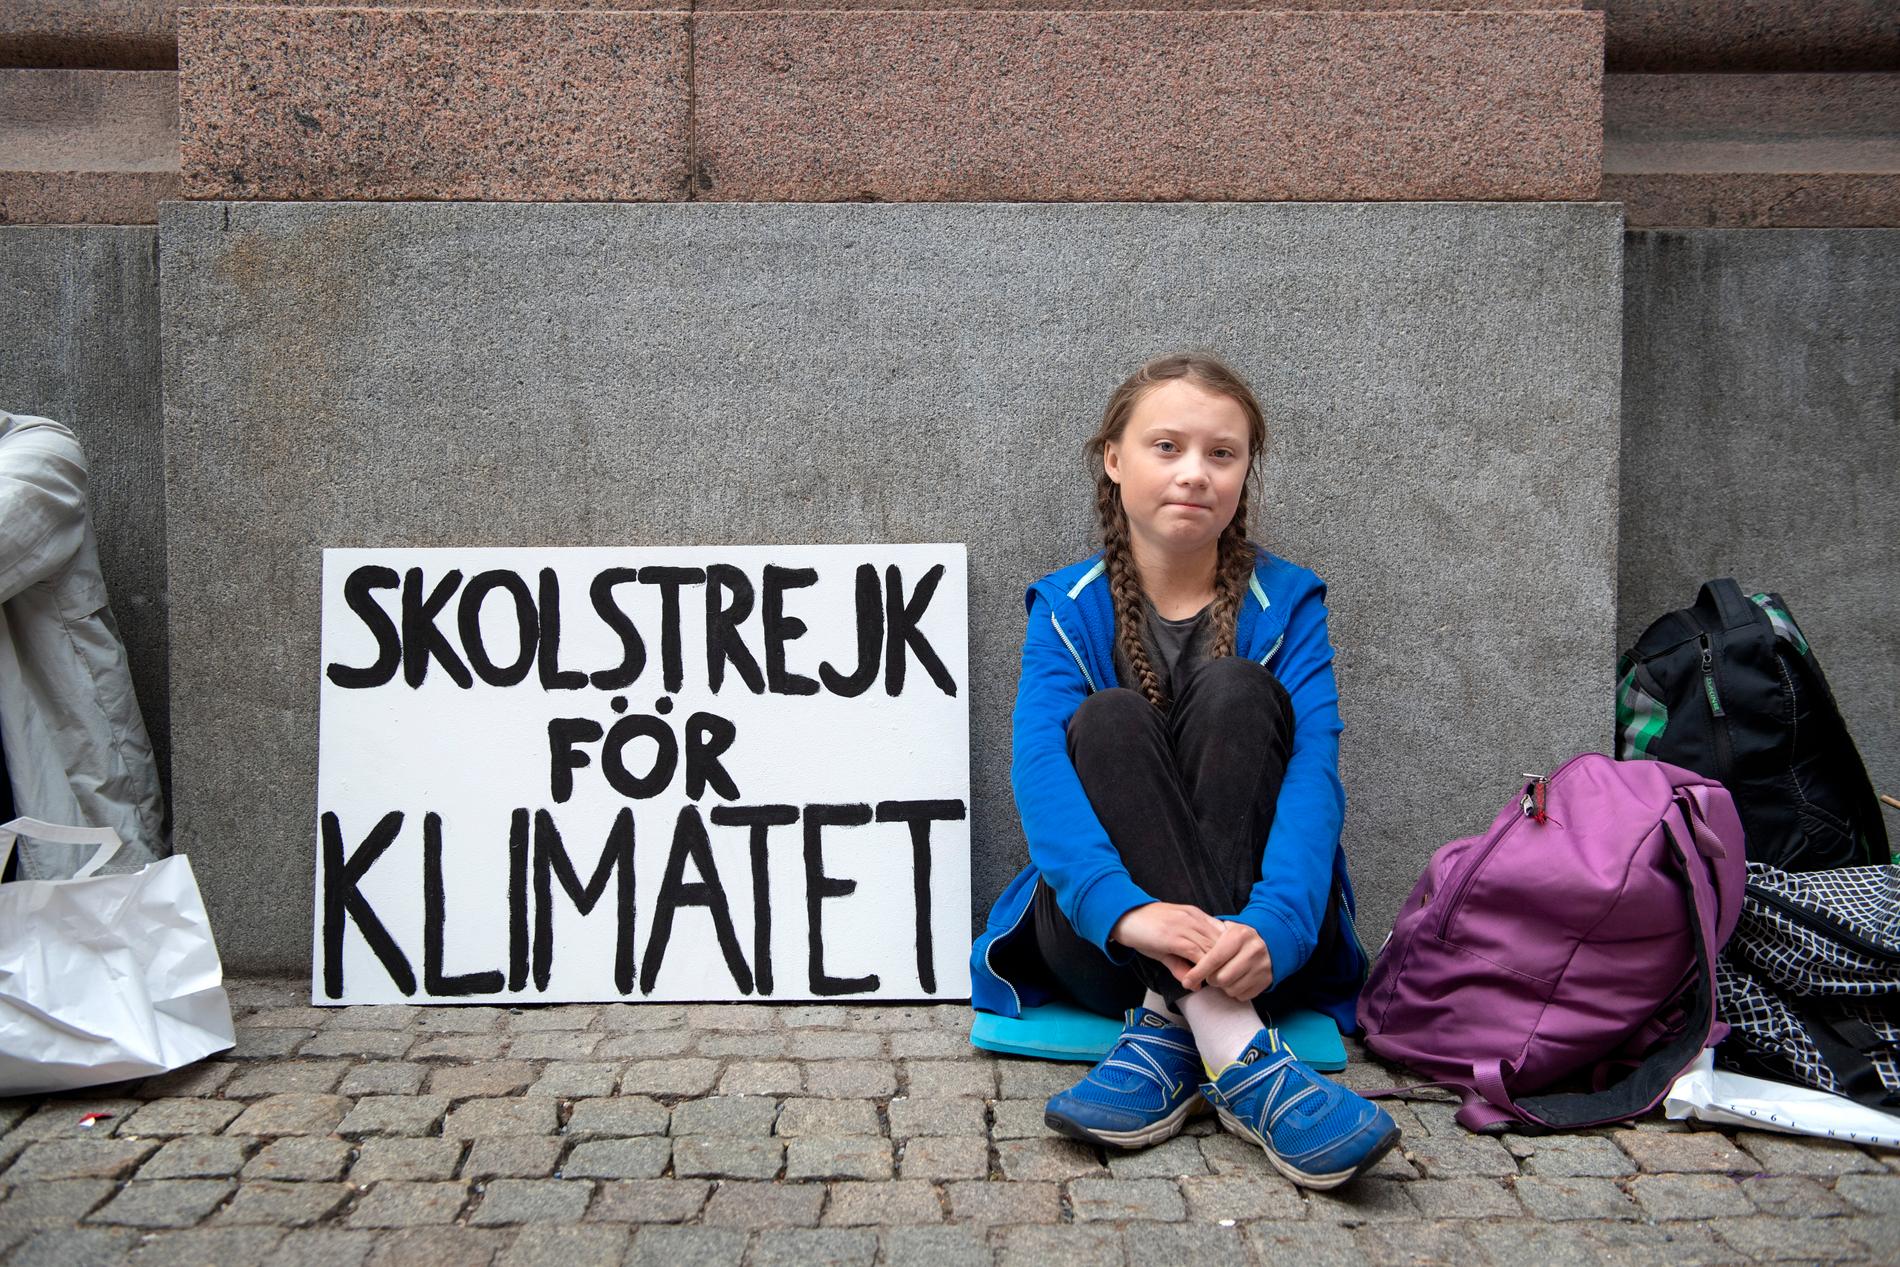 I totalt 15 dagar strejkade Greta Thunberg för klimatfrågan. Nu bjuds hon in till Arnold Schwarzenggers årliga klimatmöte för att få chans att "inspirera ännu fler".